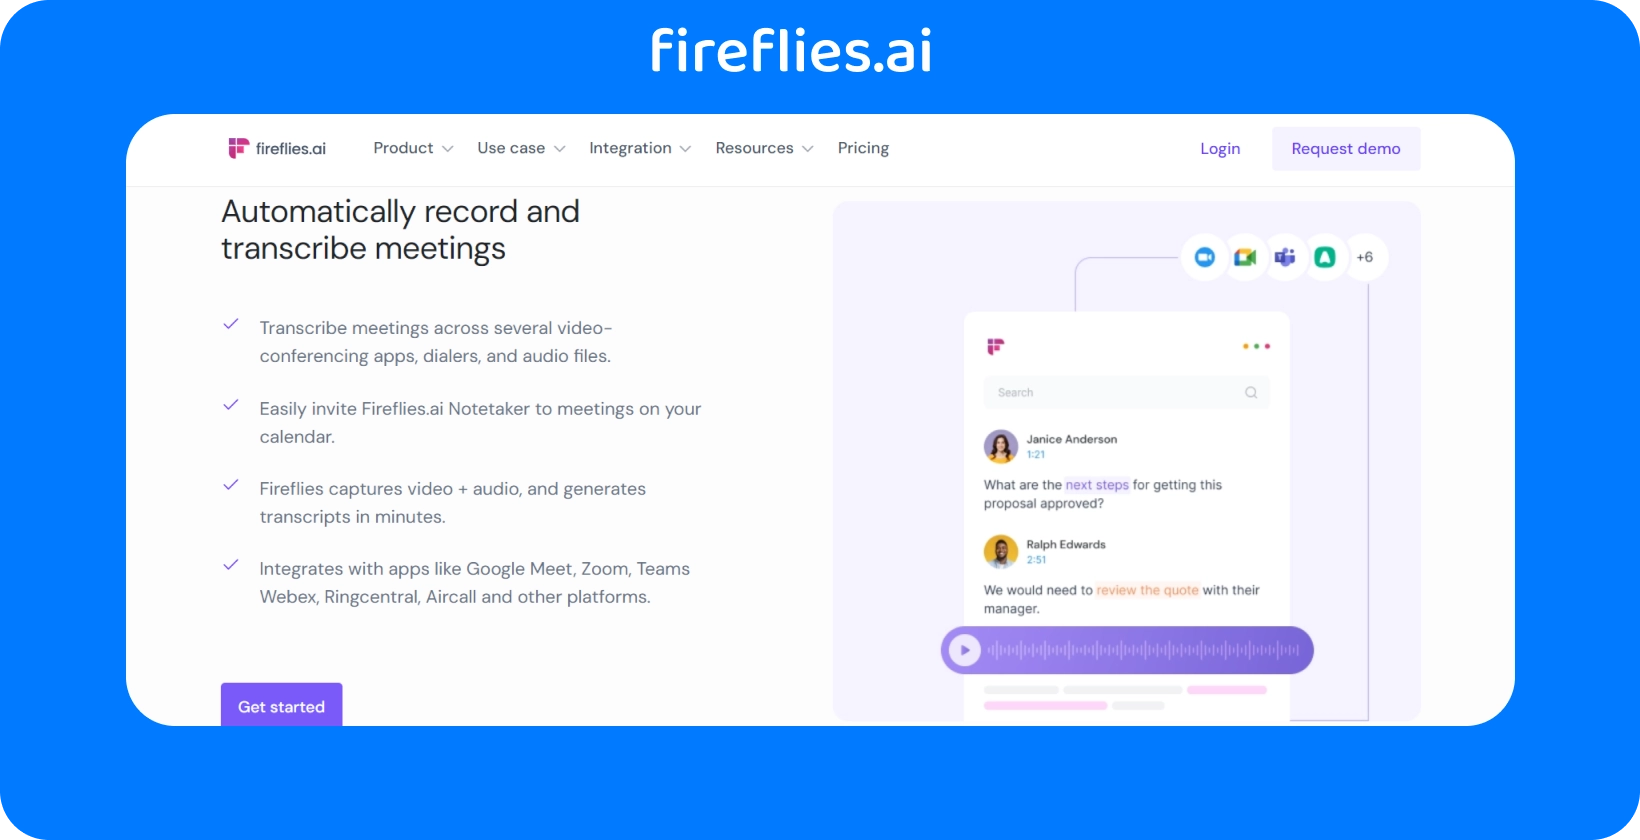 Captura de tela do Fireflies.ai, uma ferramenta líder de transcrição de chamadas, mostrando sua interface e funcionalidade.